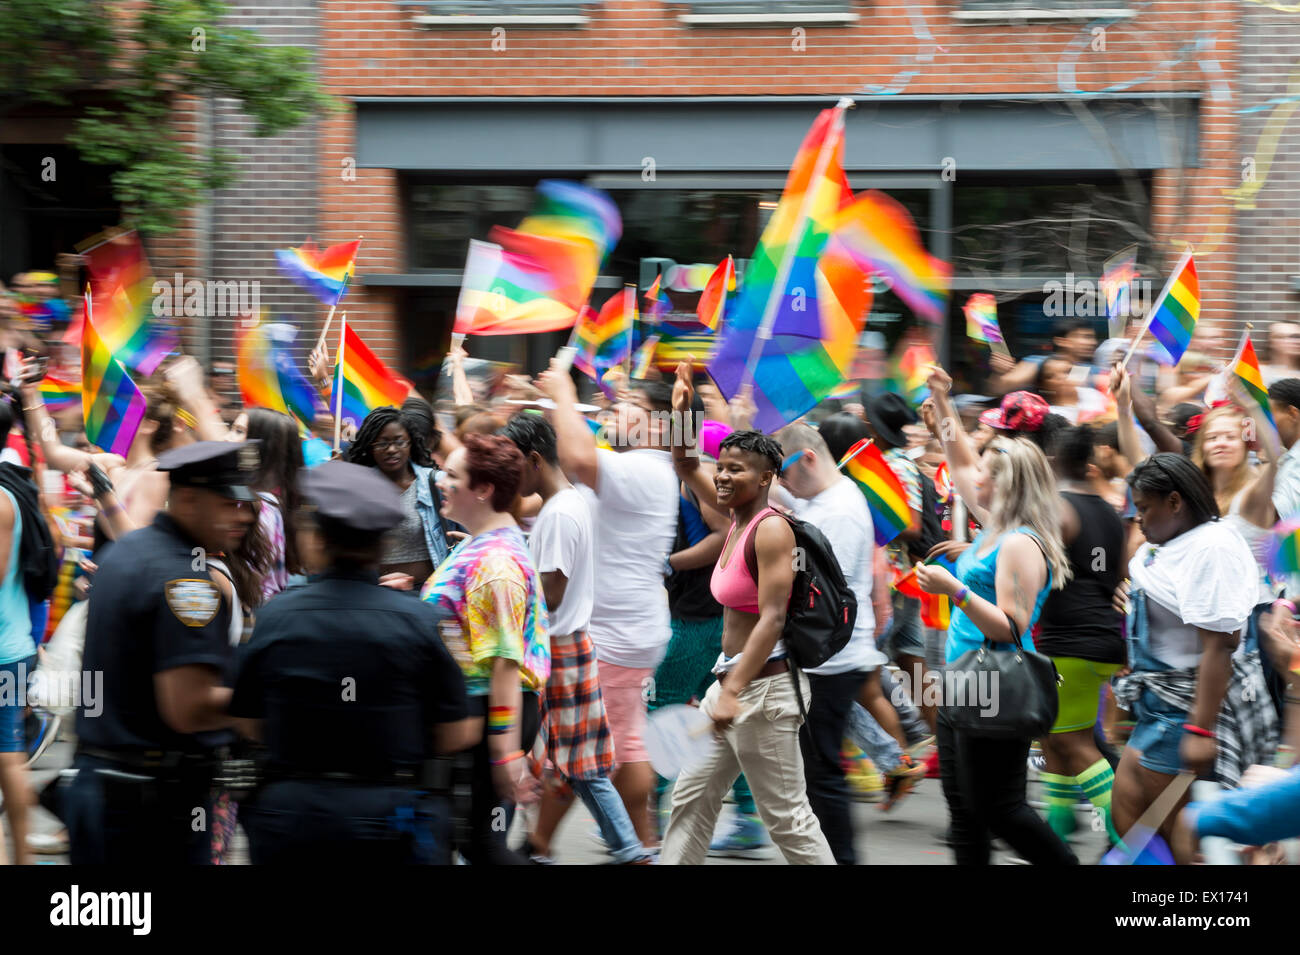 La VILLE DE NEW YORK, USA - 28 juin 2015 : lors de l'Assemblée célébrants gay pride parade des drapeaux arc-en-ciel vague comme ils passent de la police. Banque D'Images